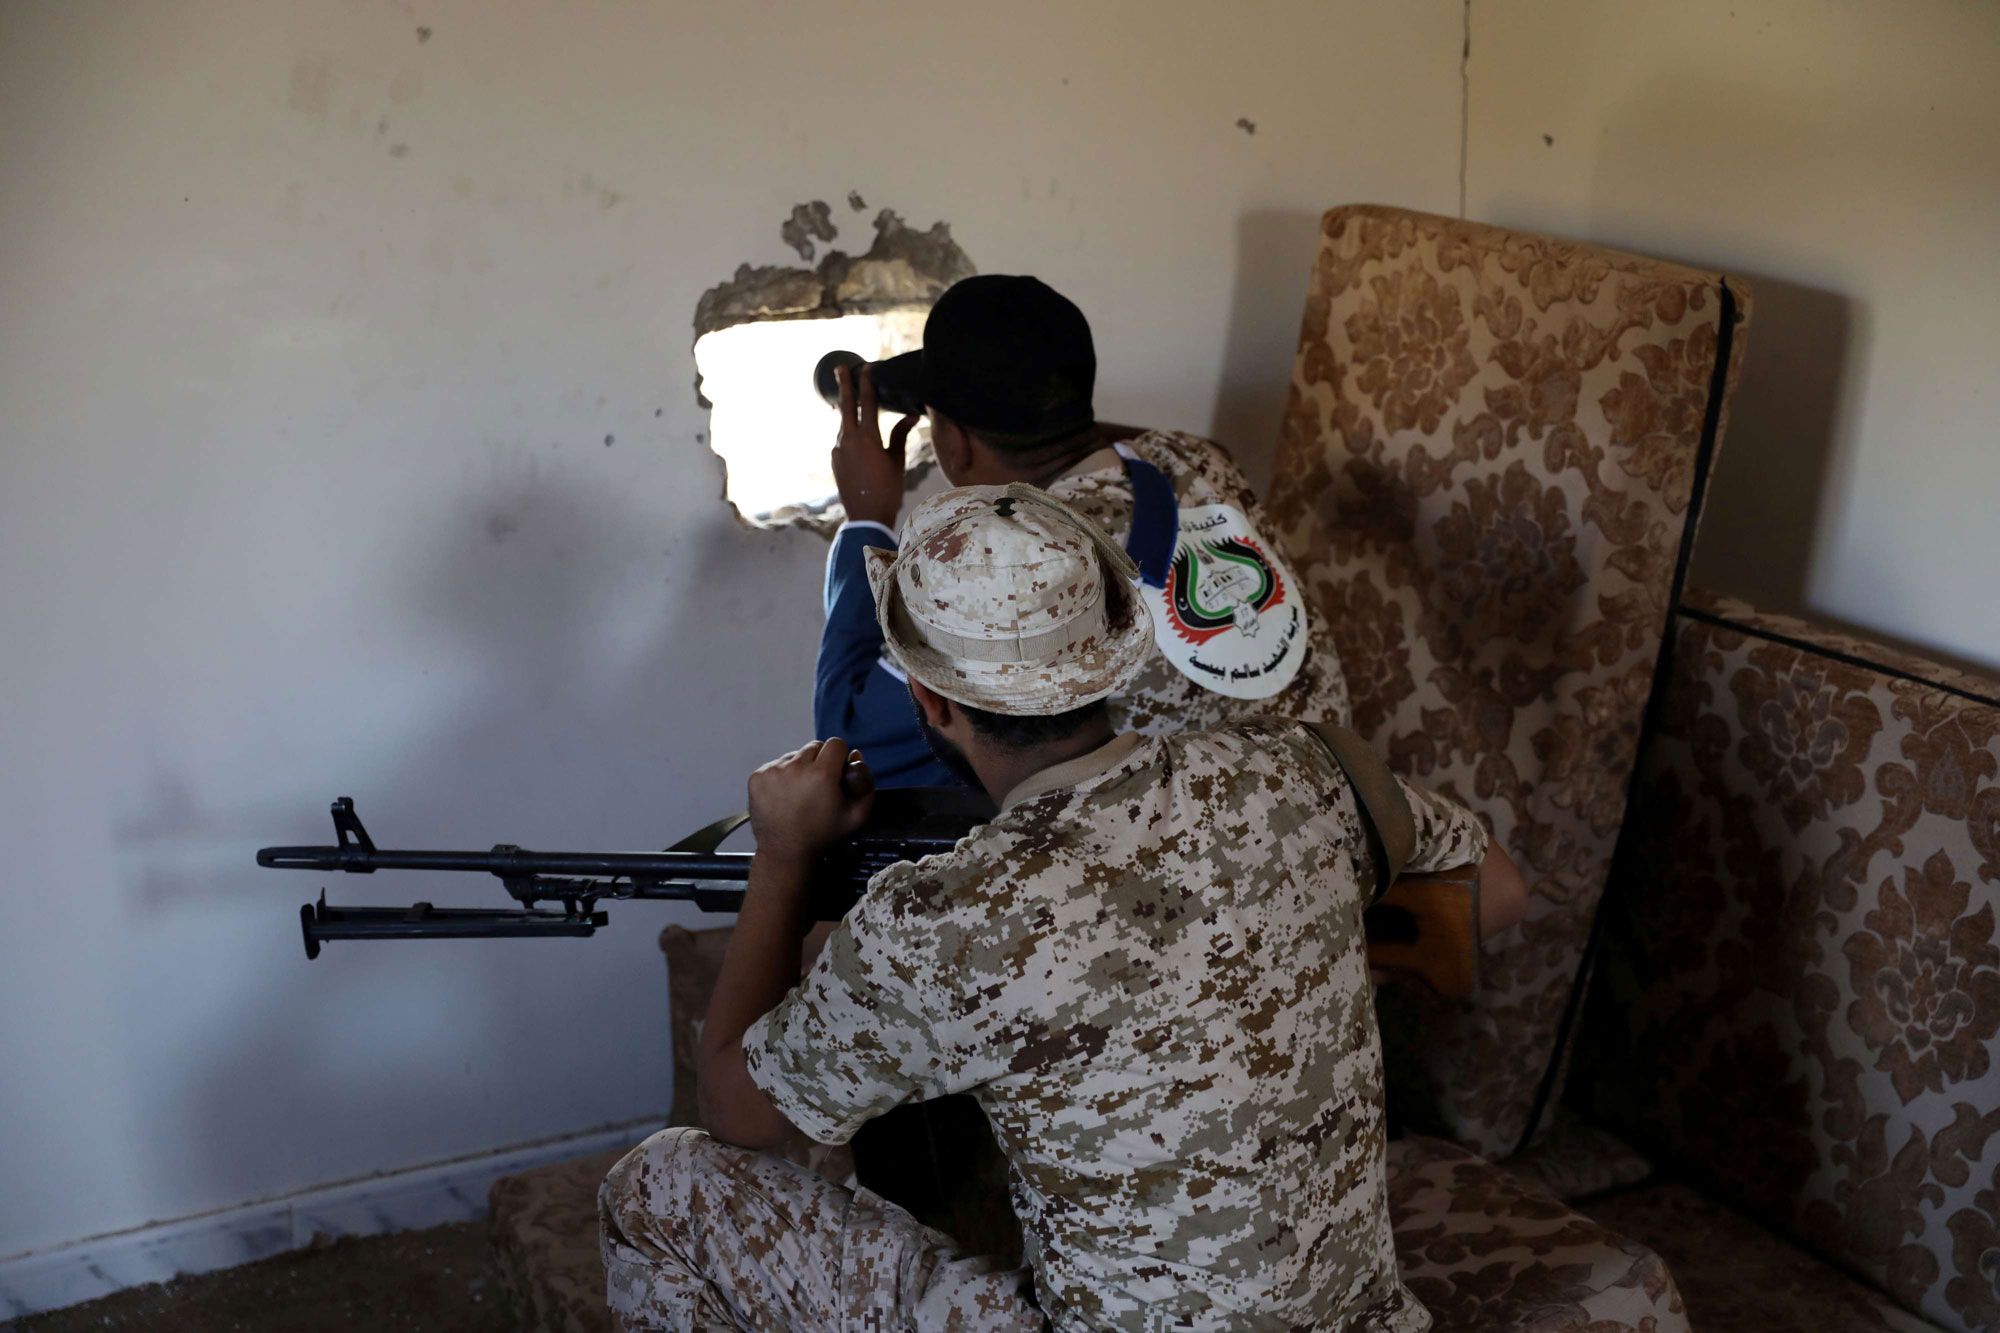 قوات السراج تستشعر هزيمة قريبة مع تقدم الجيش الوطني الليبي على أكثر من محور صوب طرابلس